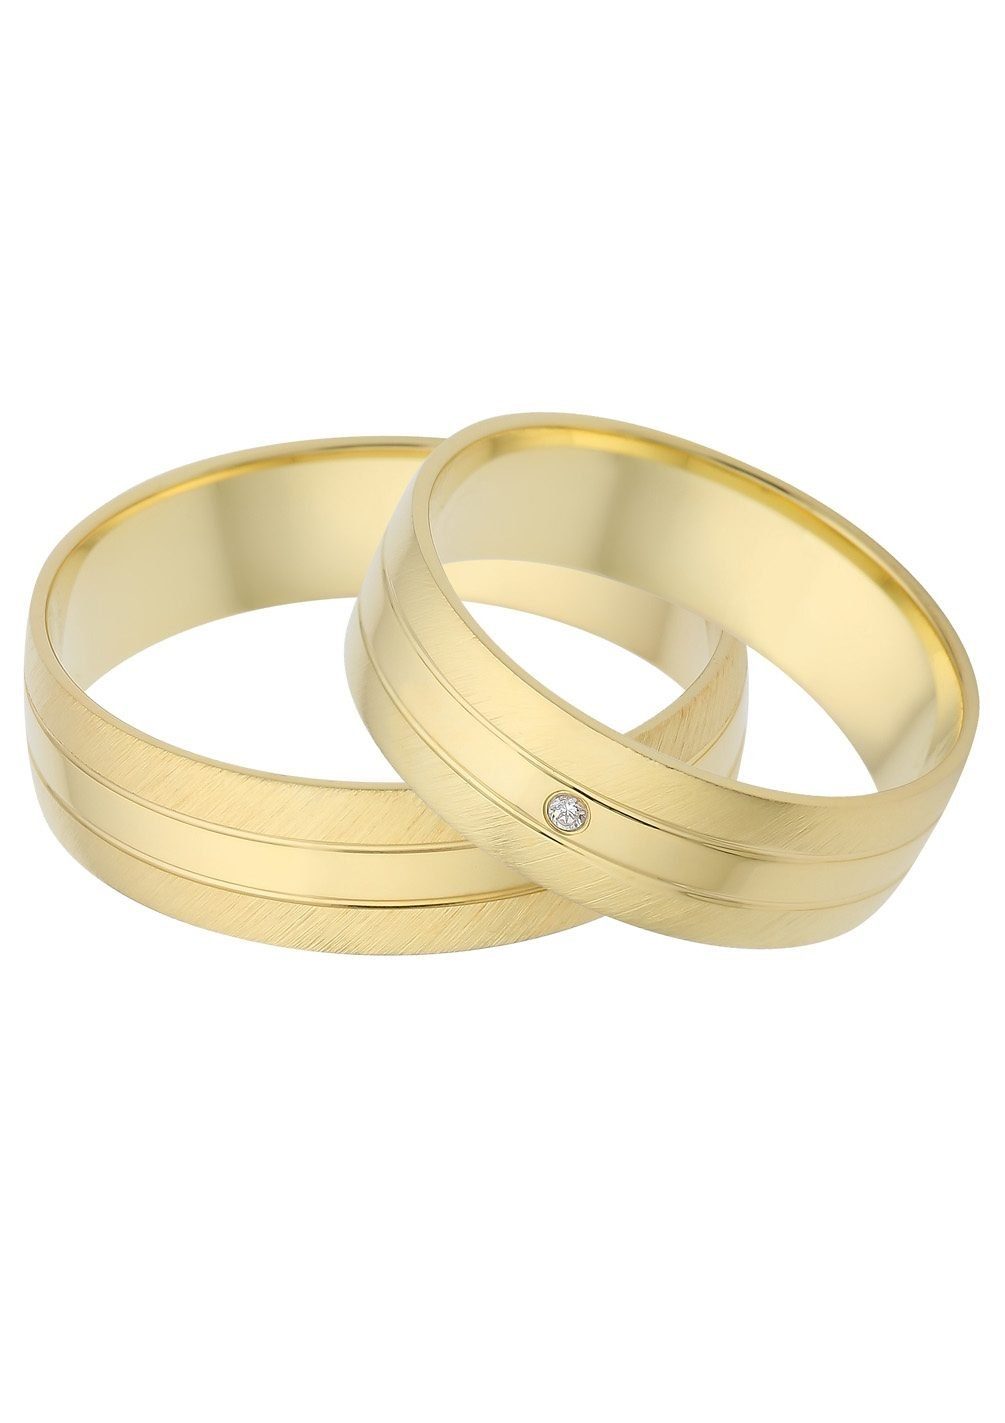 Geschenk Gold mit 375 Trauring Trauring Brillant/Diamant in ohne "LIEBE", Germany Made Schmuck Hochzeit - Firetti o. Ehering